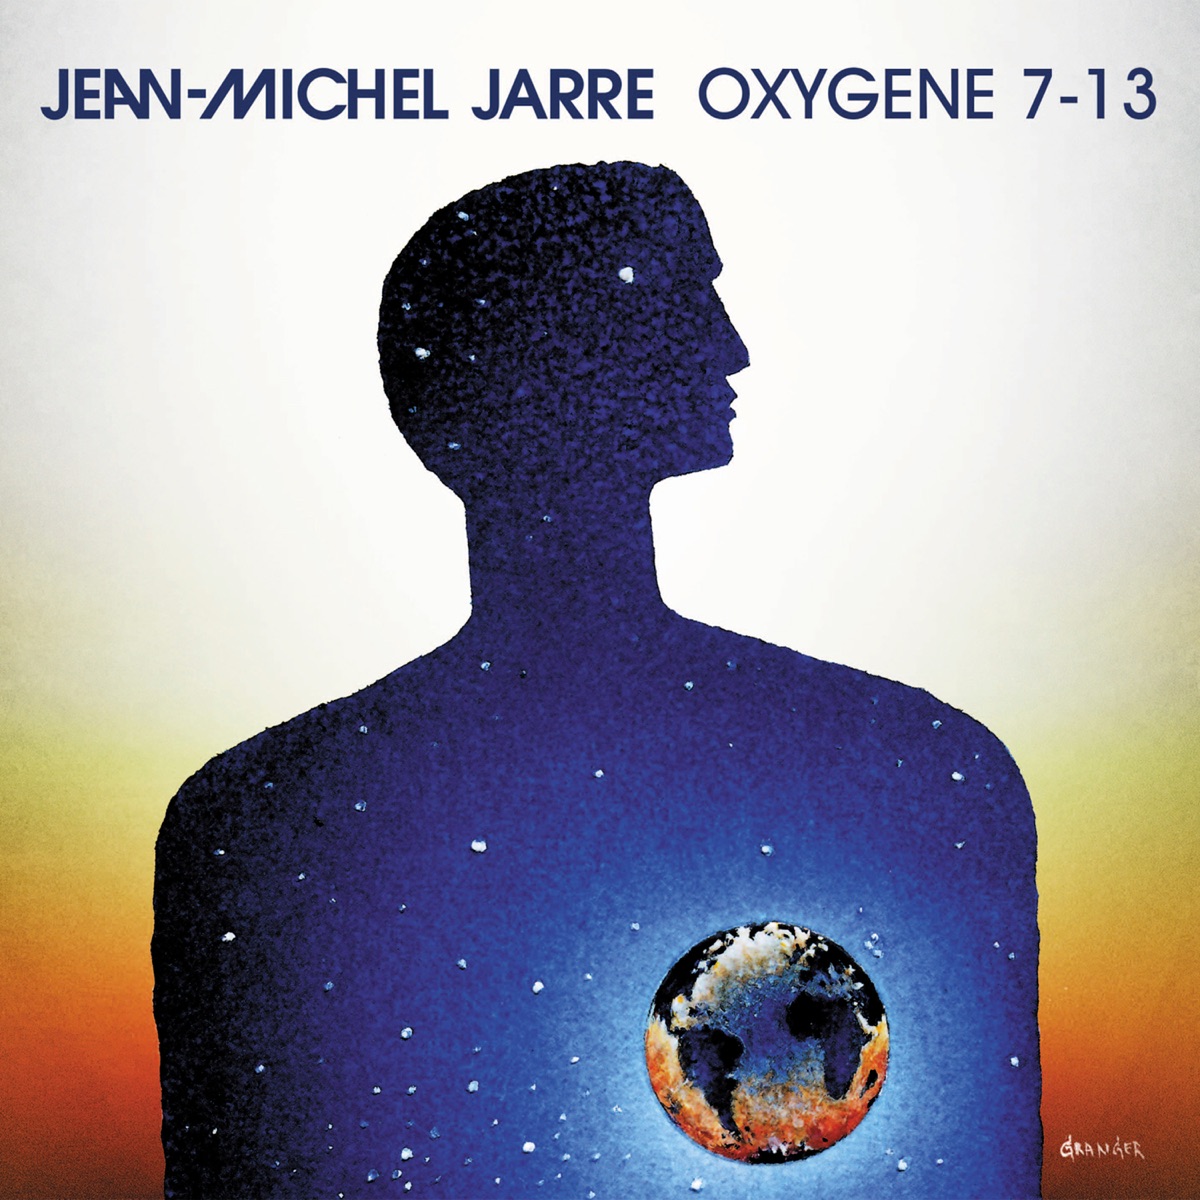 Oxygene 3 - Album by Jean-Michel Jarre - Apple Music